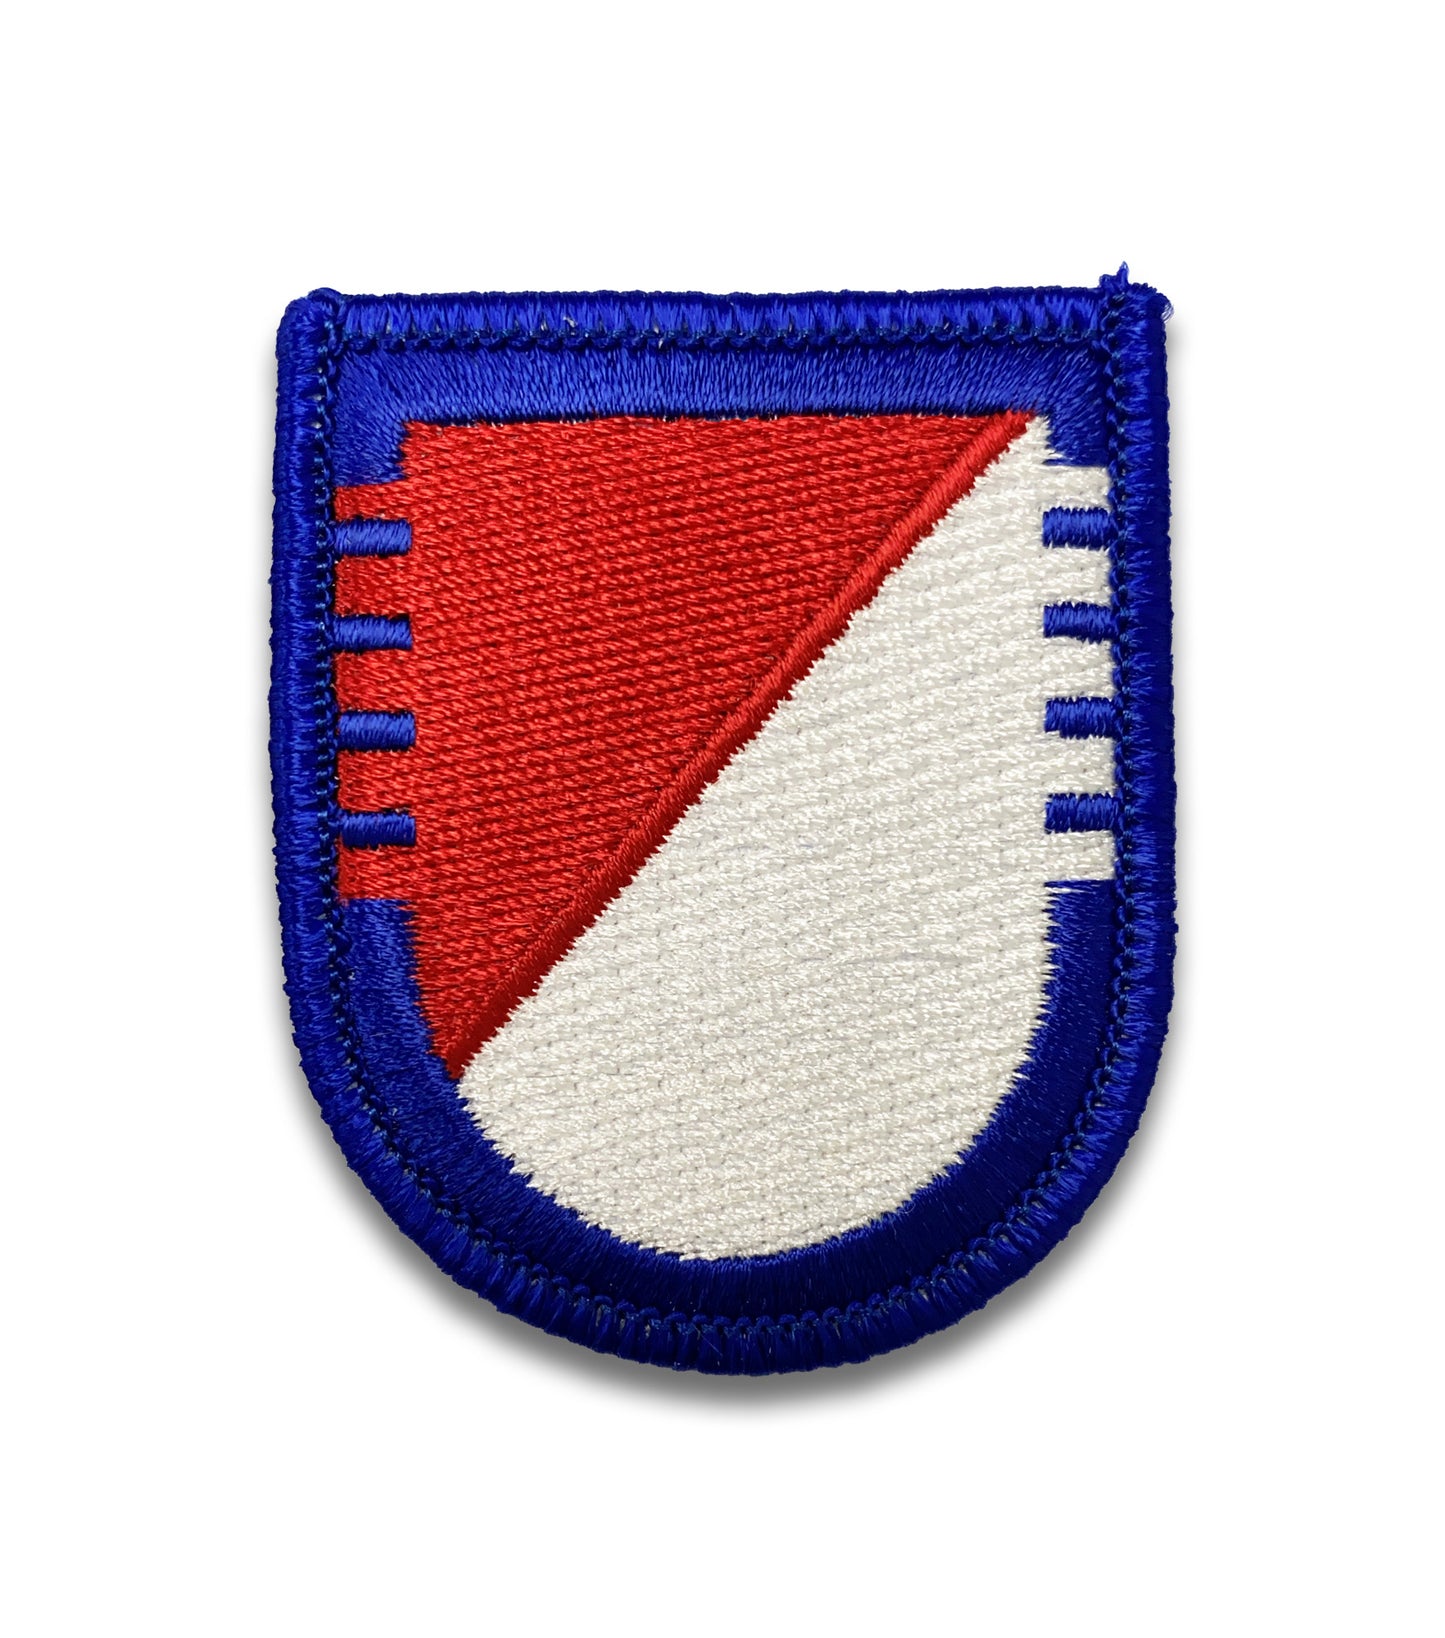 U.S. Army 73rd Cavalry Regiment 5th Squadron Flash (each)